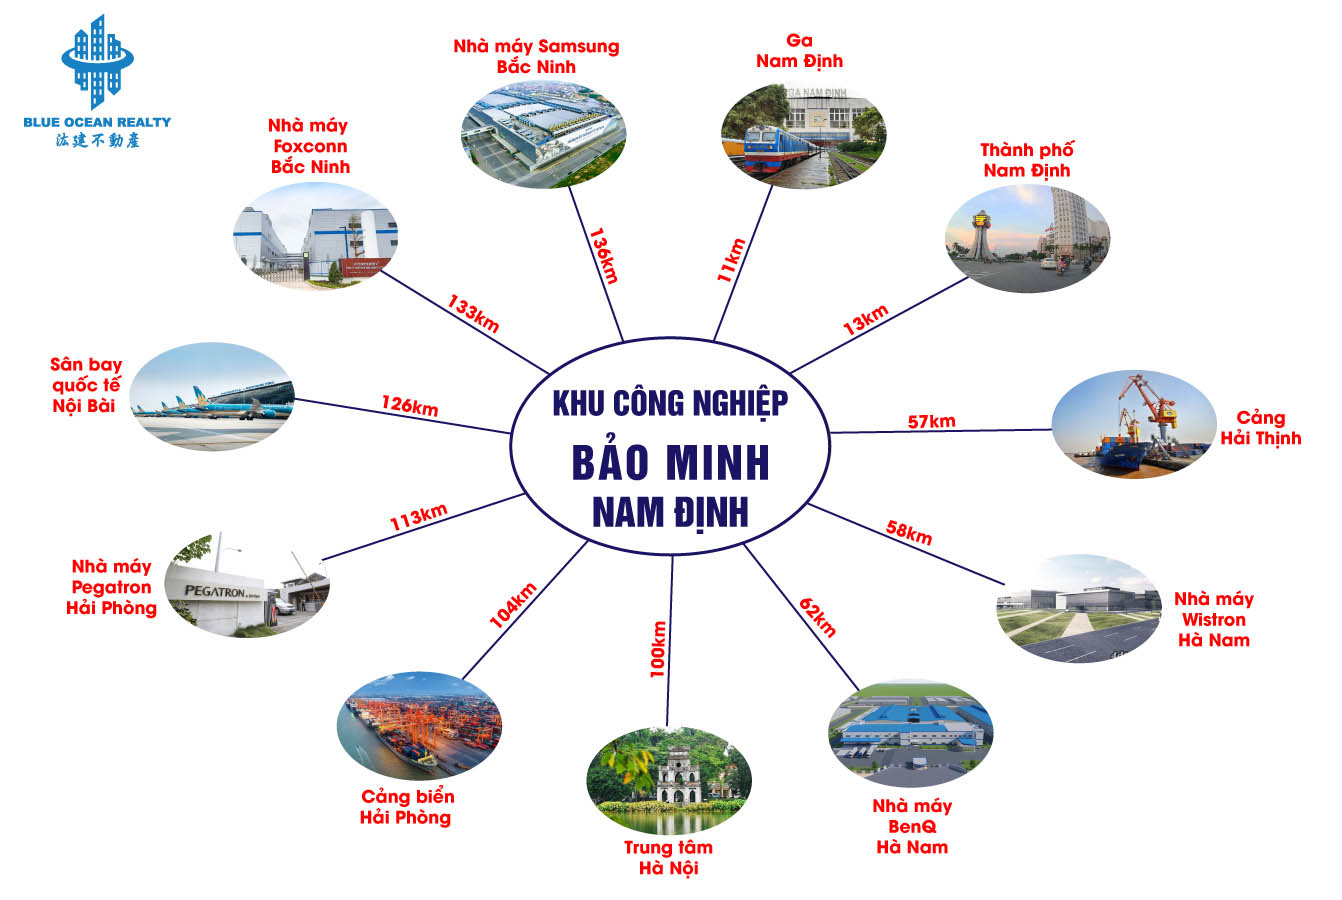 Khu công nghiệp (KCN) Bảo Minh - Nam Định